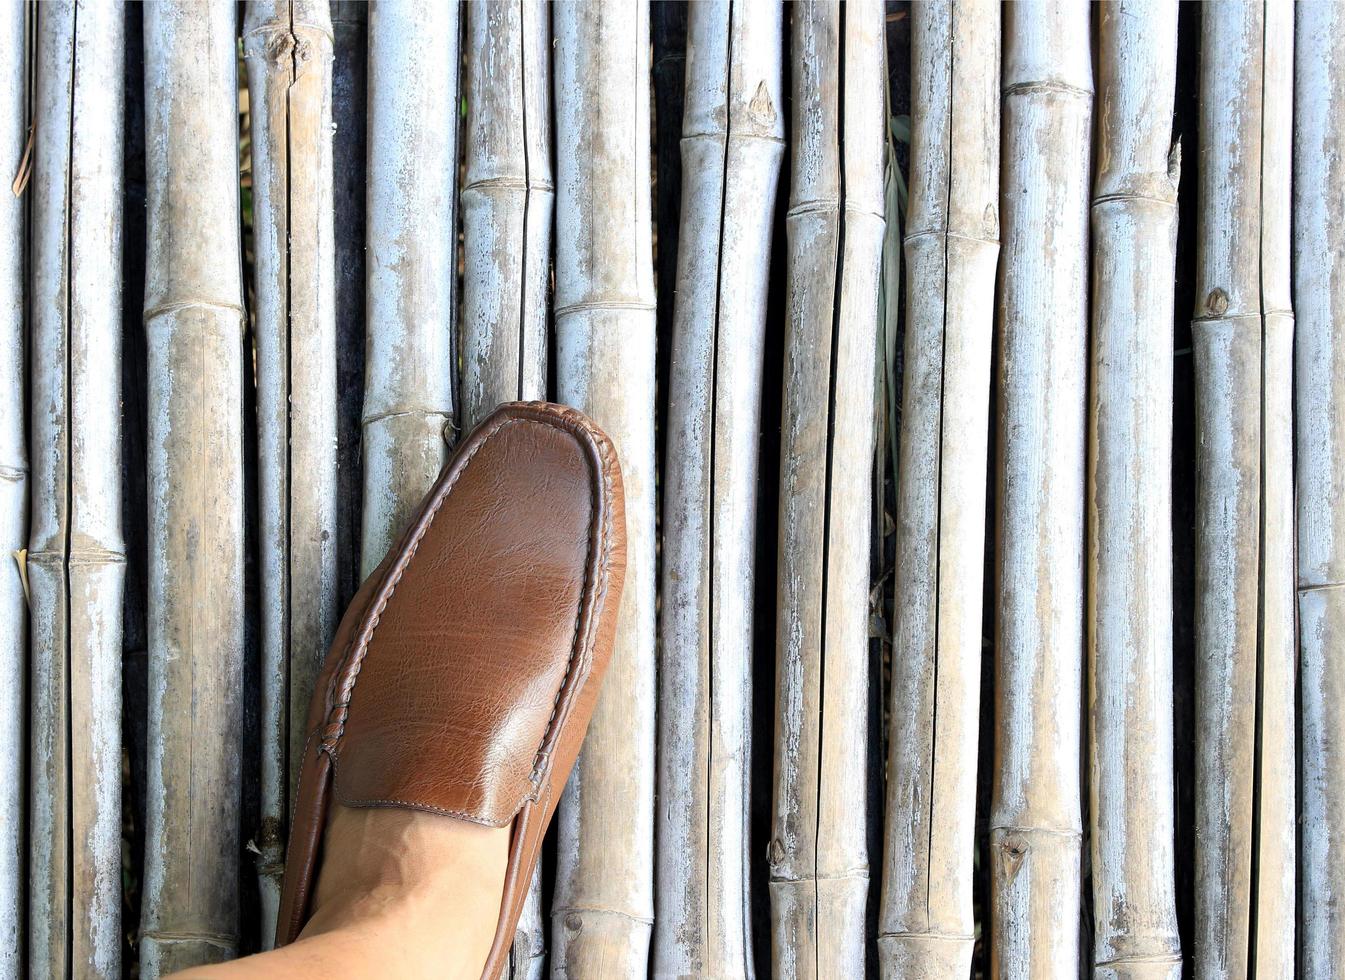 schoen op bamboe foto